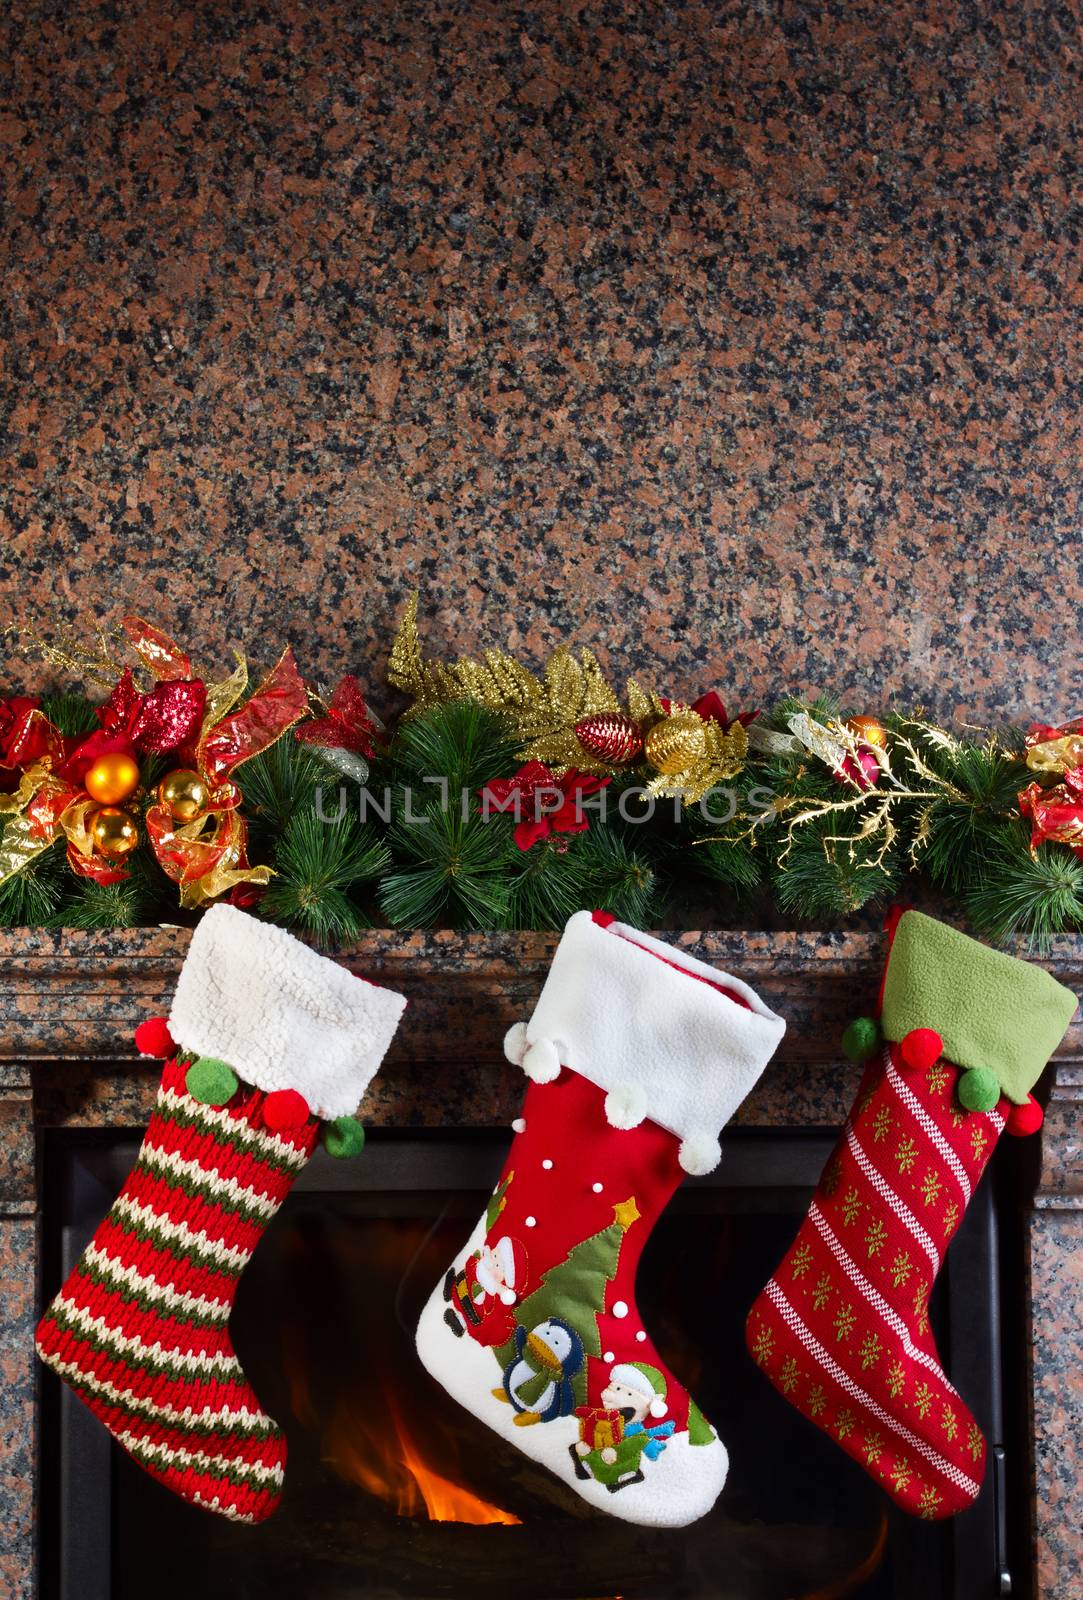 Christmas stocking on fireplace background